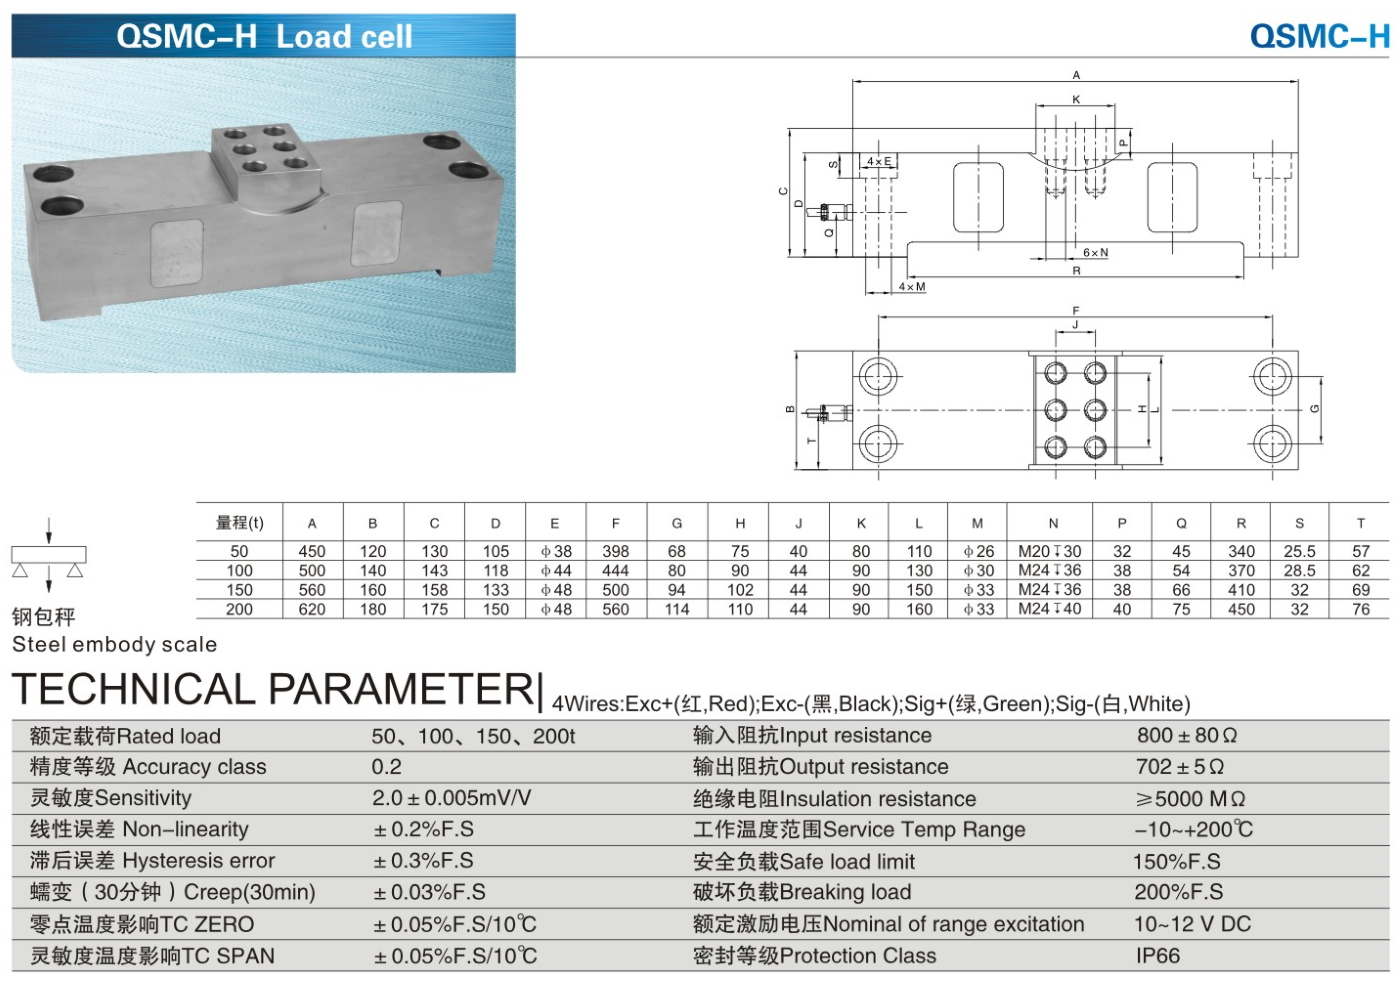 img/loadcell-images/double-ended-shear-beam/KELI_QSMC-H_Loadcell-TTM_Teknoloji.jpg